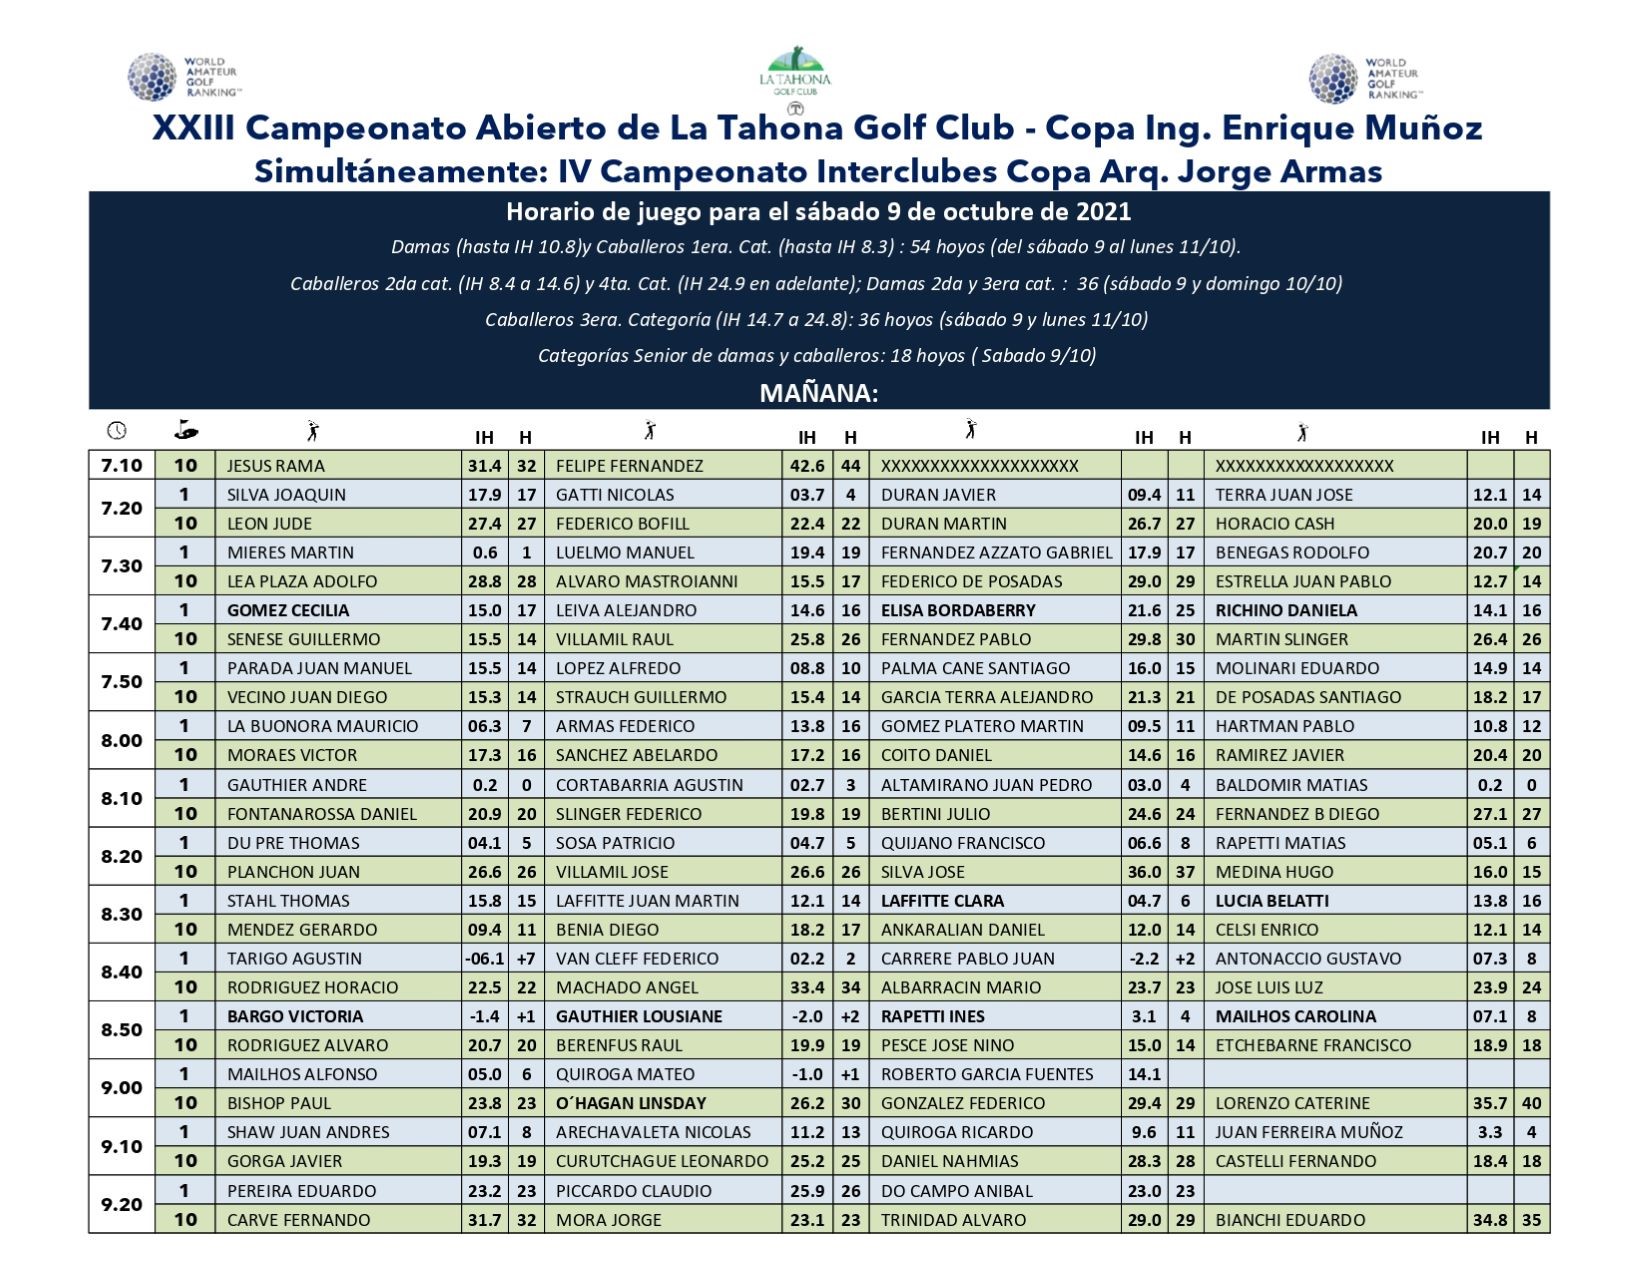 XXIII Cto. Abierto de La Tahona Golf Club Copa Ing. Enrique Muoz - horarios 1er da - DE MAANA